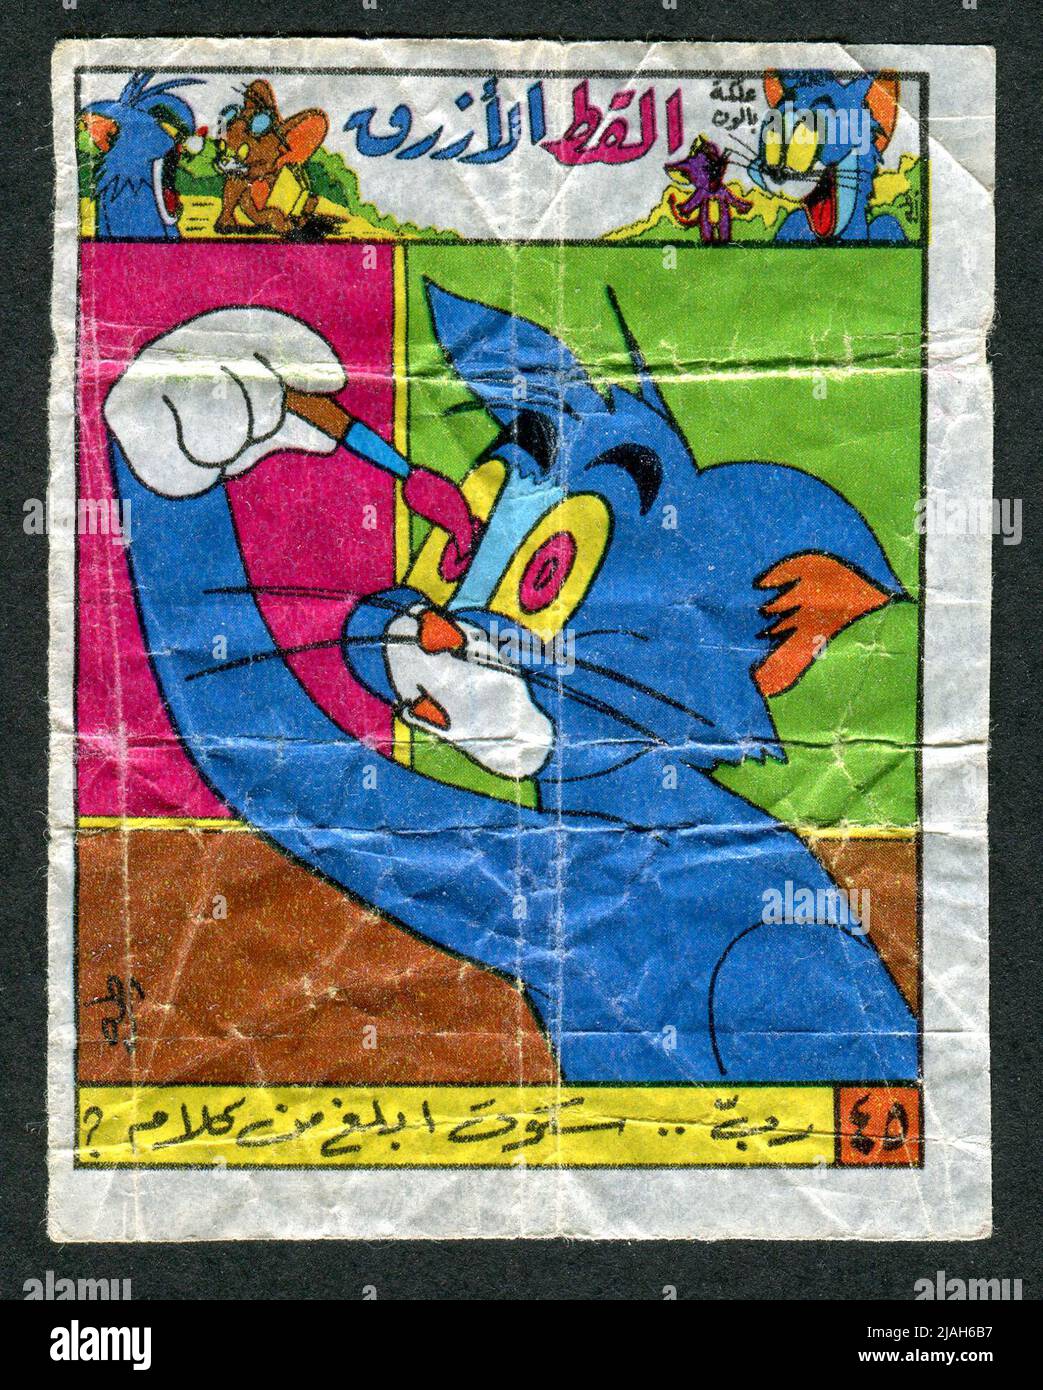 Turkish chewing gum insert. Cartoon. Tom & Jerry. 1980s. Stock Photo